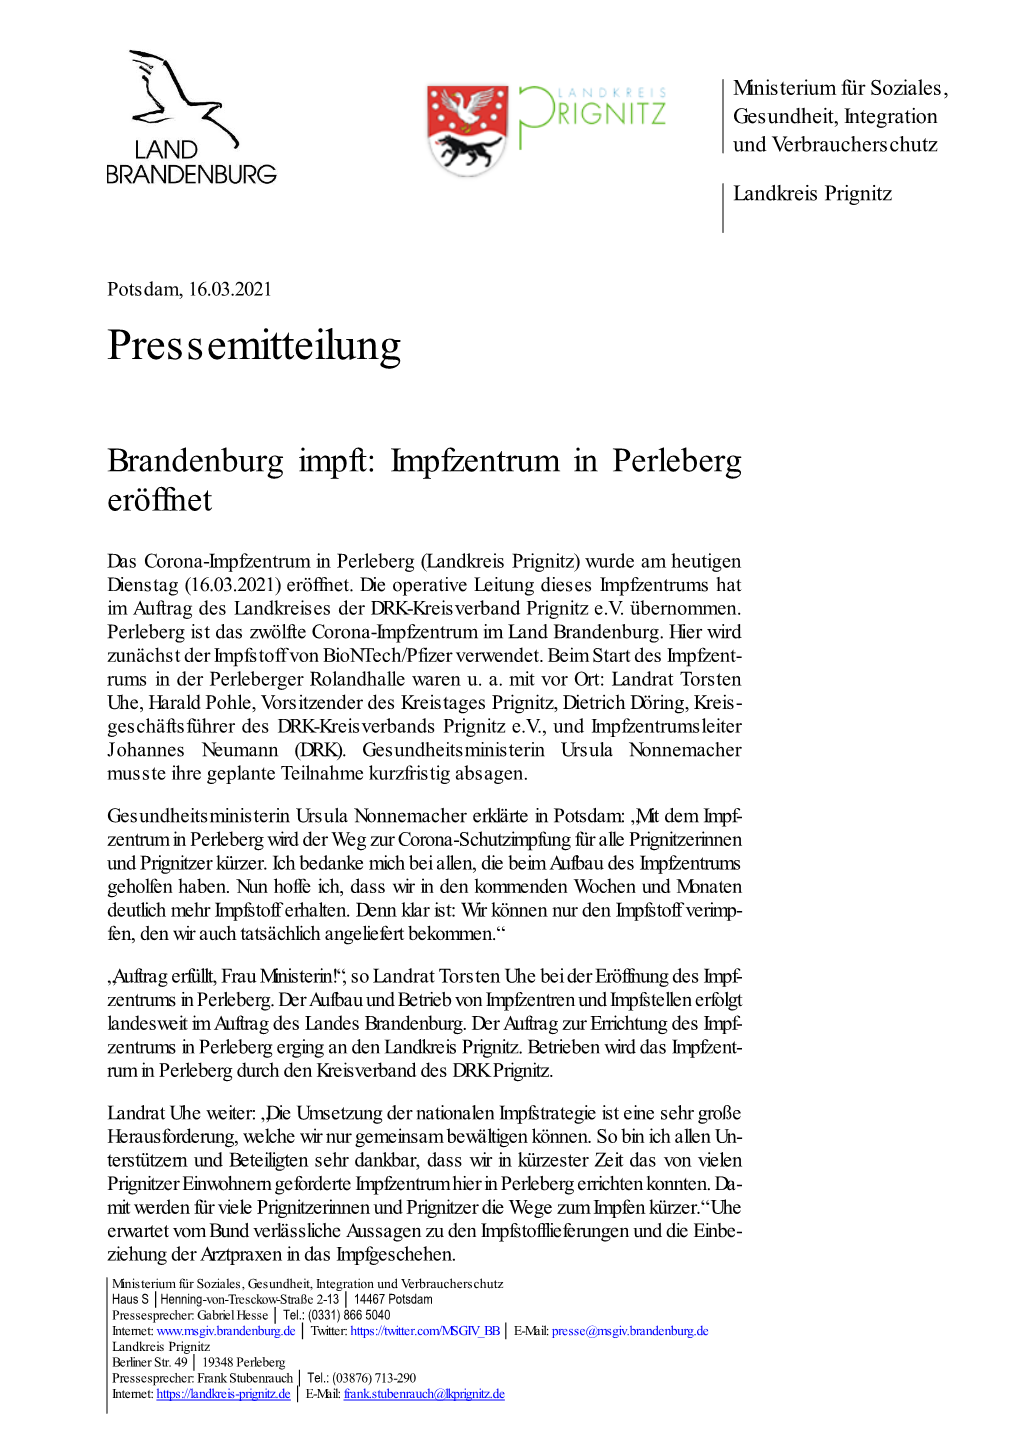 Impfzentrum in Perleberg Eröffnet (Pressemitteilung Vom 16.03.2021)